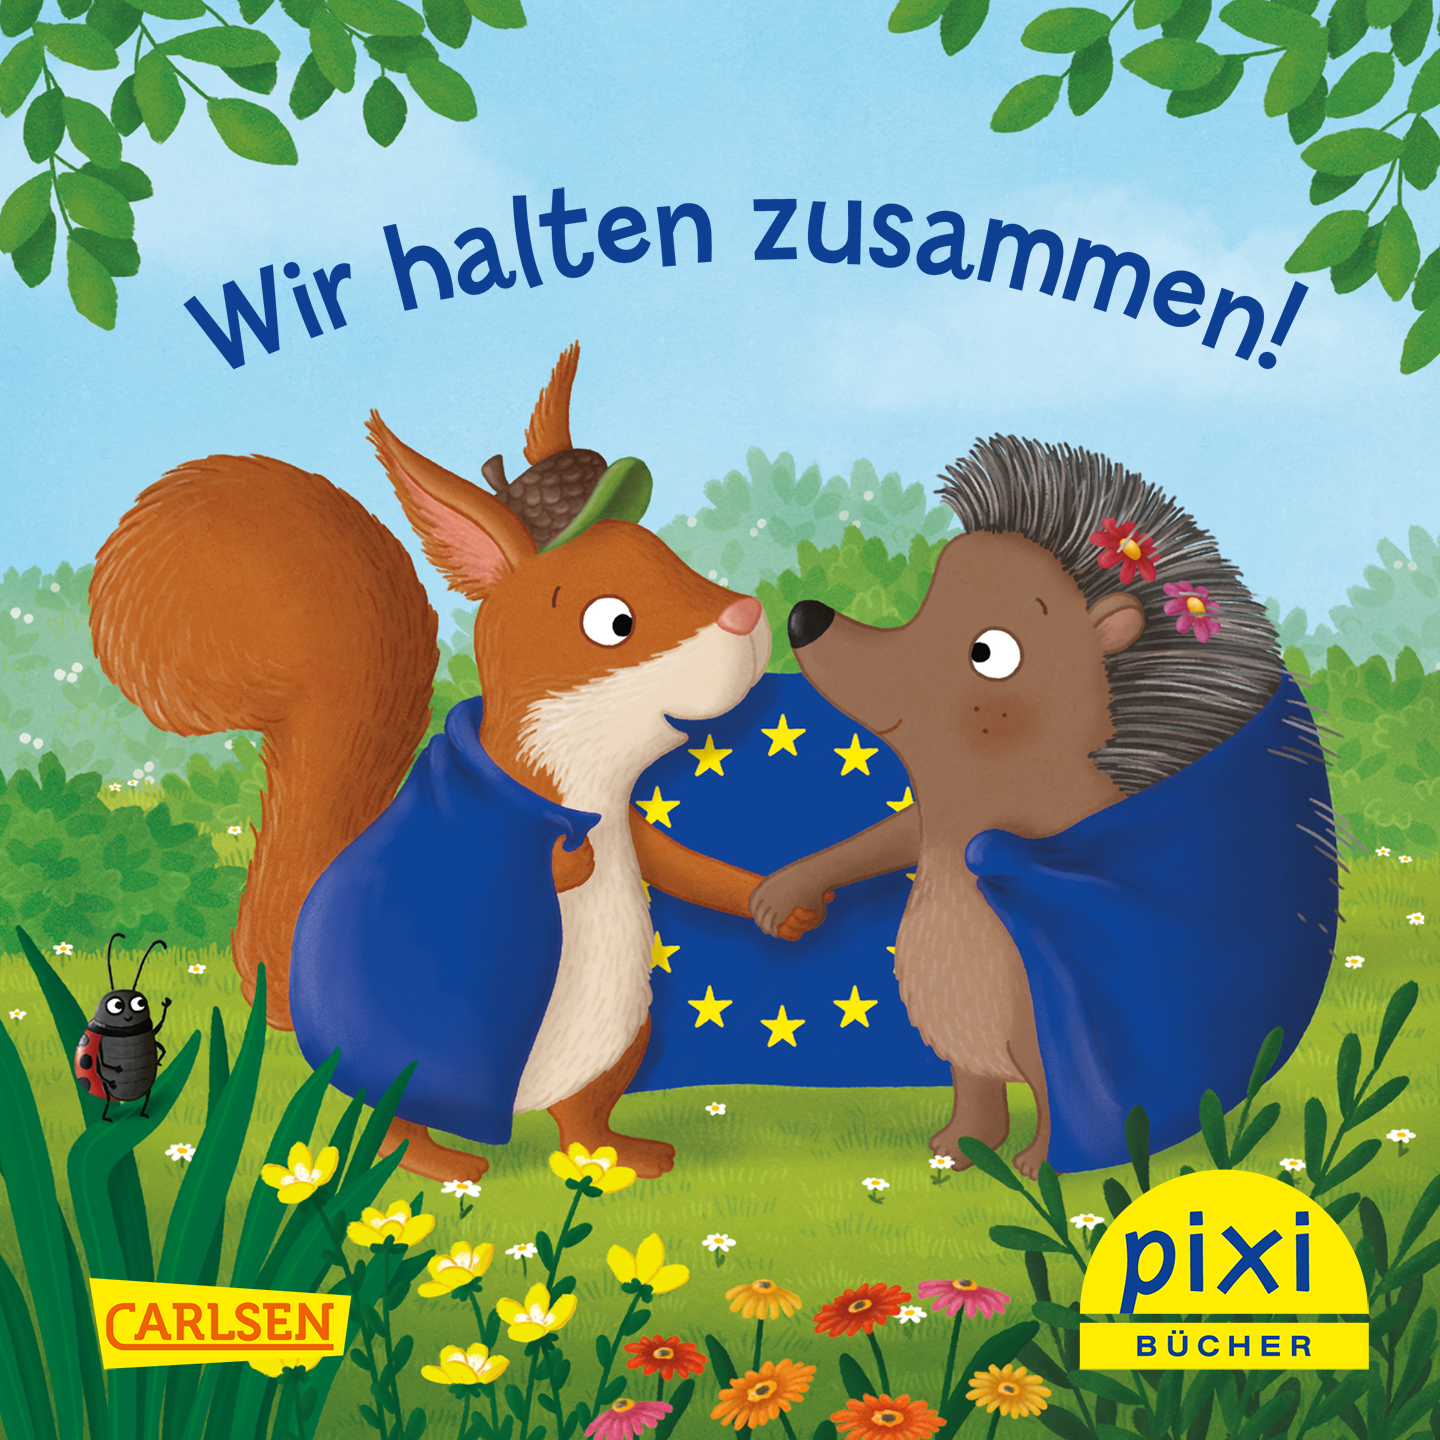 Cover des Pixi-Buchs "Wir halten zusammen!"